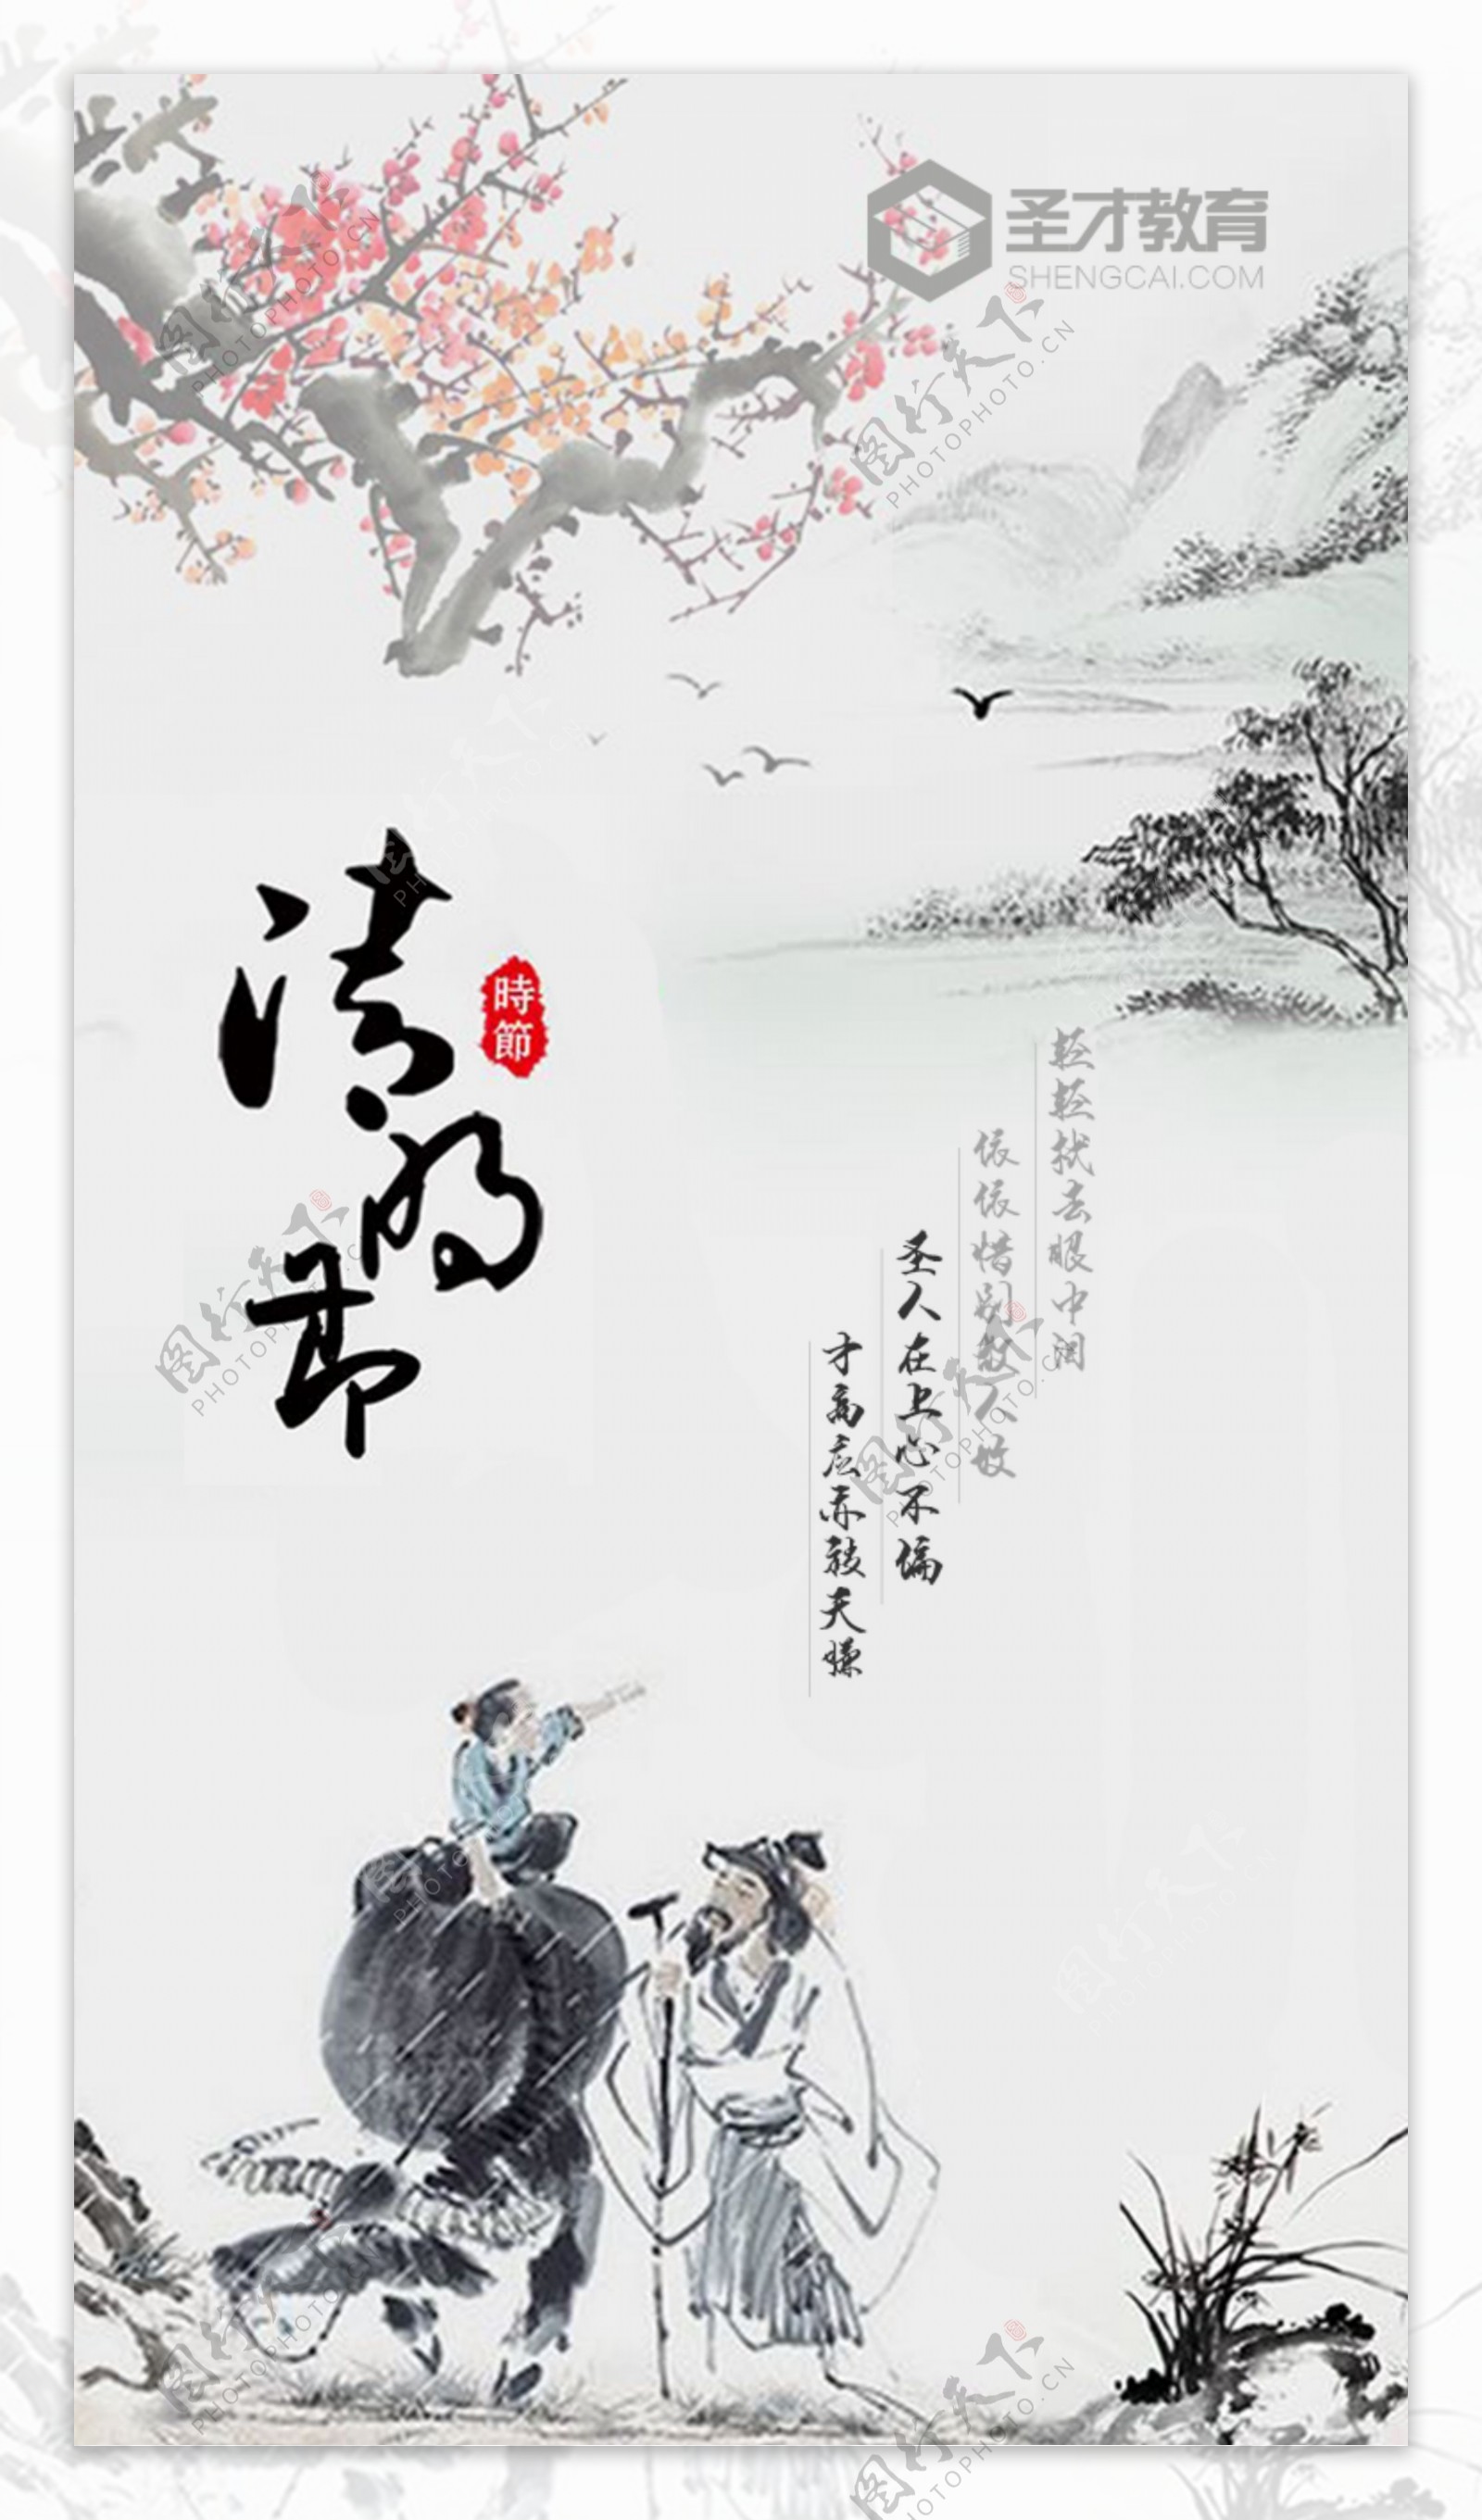 毛笔诗歌水墨中国风细雨清明文字排版海报